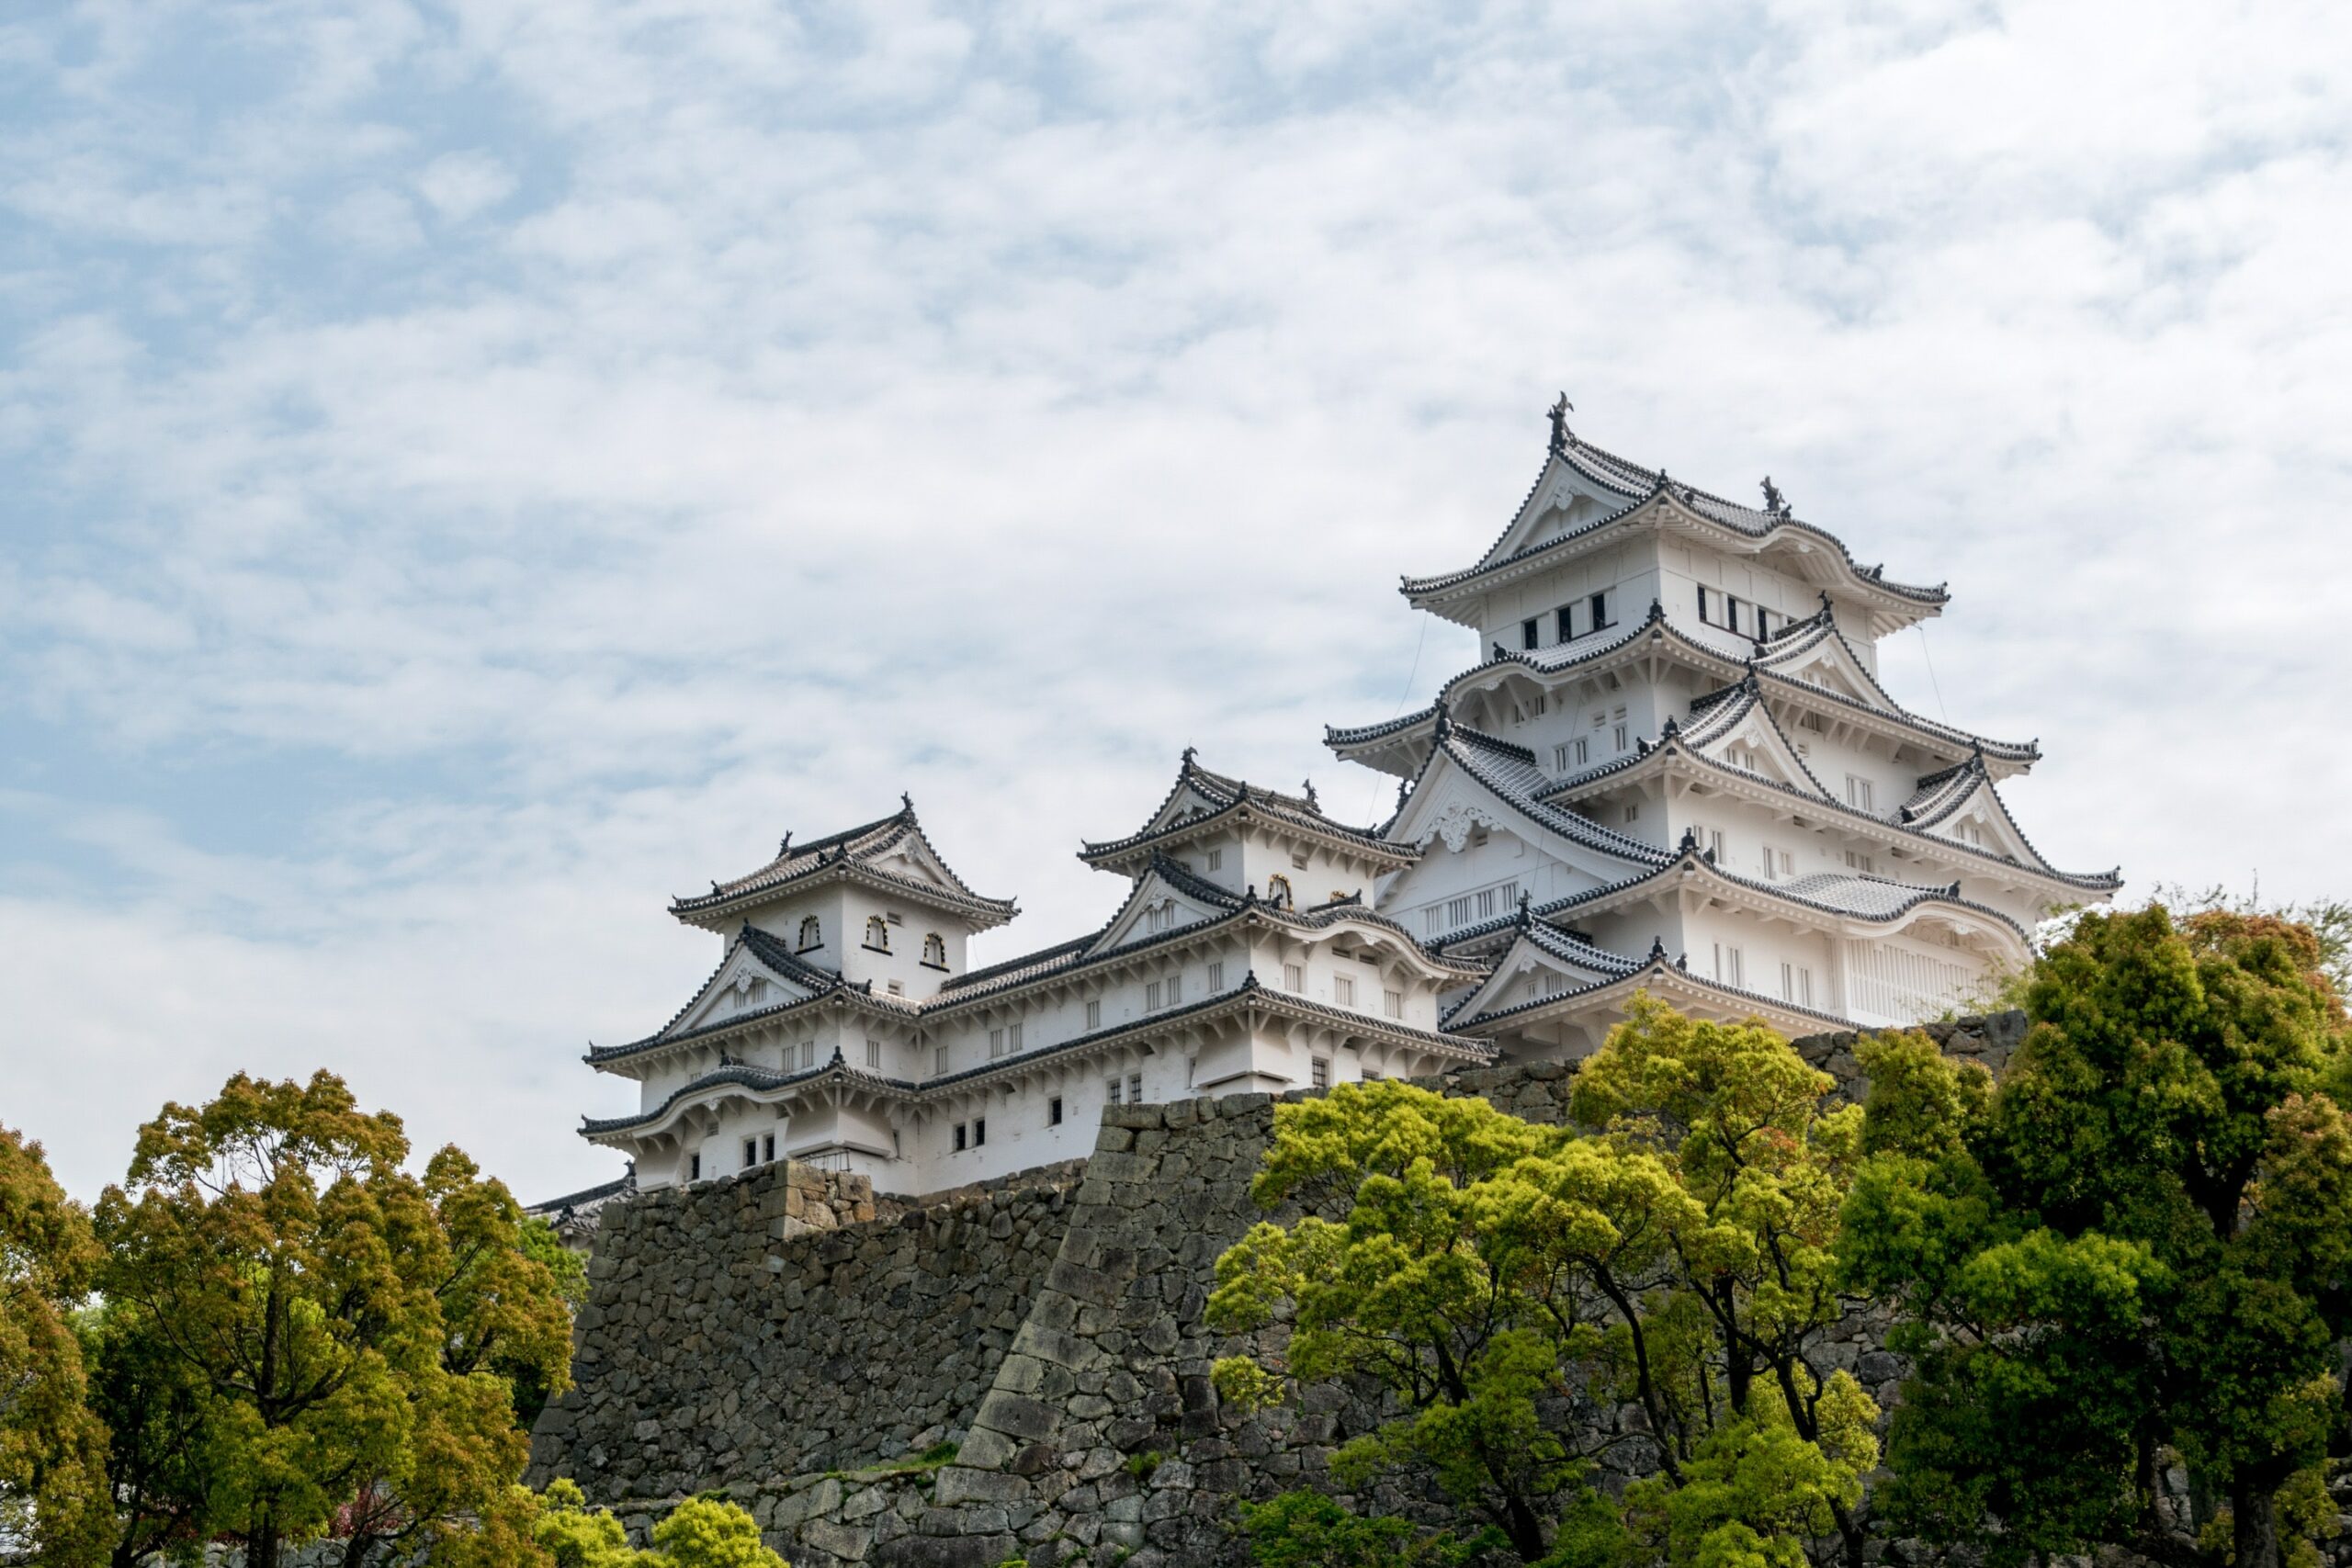 ปราสาทฮิเมะจิ ปราสาทสีขาวที่รอดพ้นจากการทิ้งระเบิดในสงครามโลก (ทัวร์ญี่ปุ่นกรุ๊ปเหมา EP1)